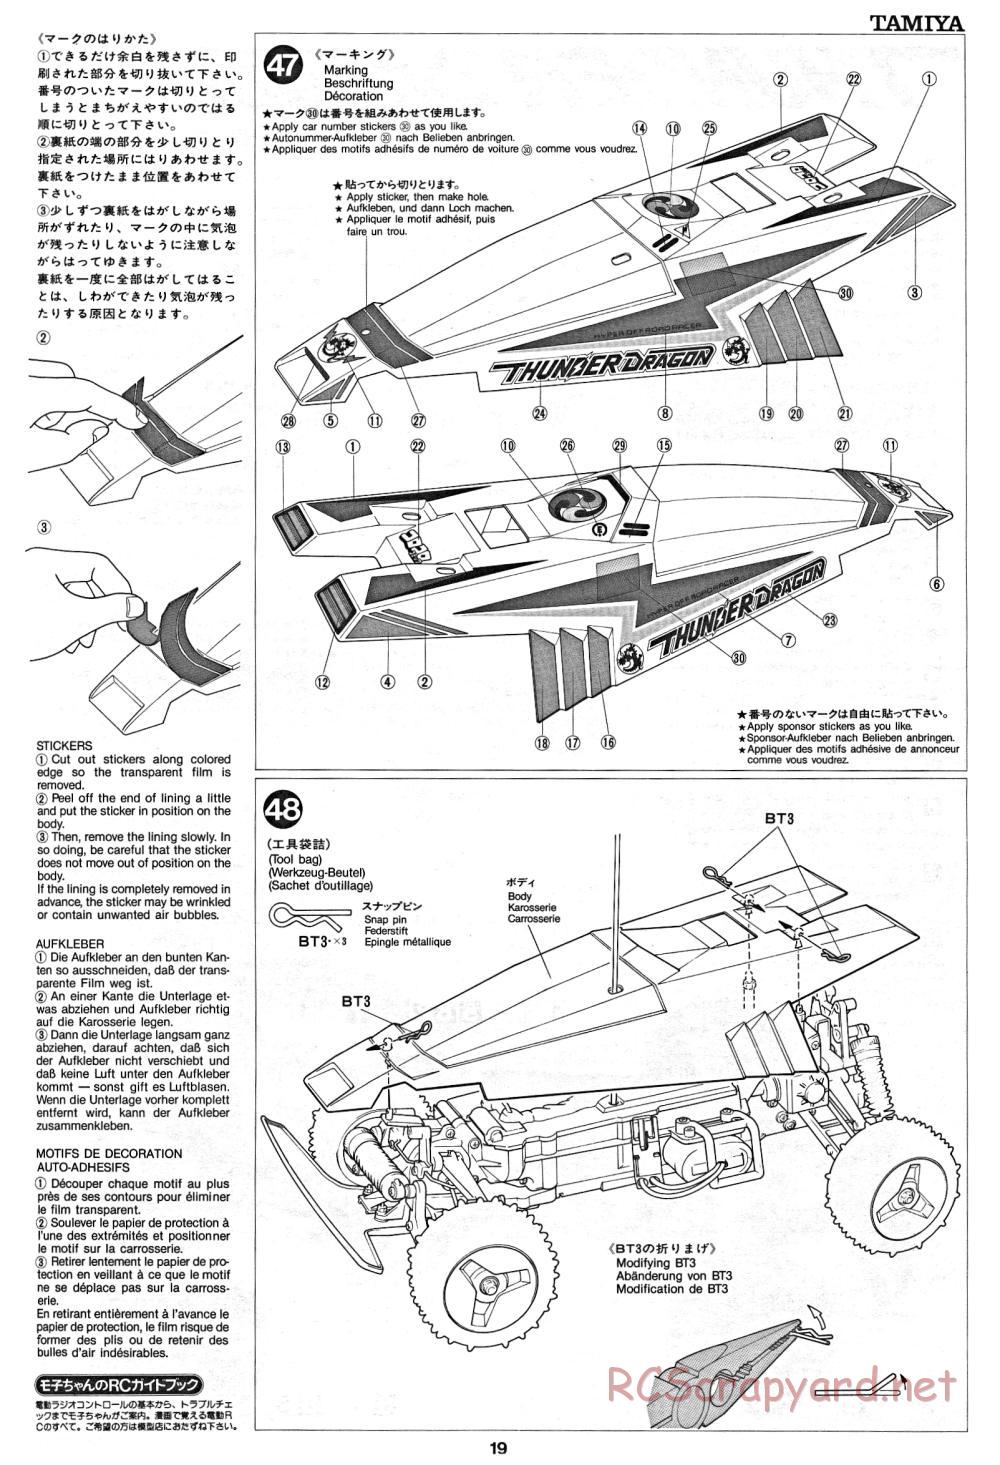 Tamiya - Thunder Dragon - 58073 - Manual - Page 19